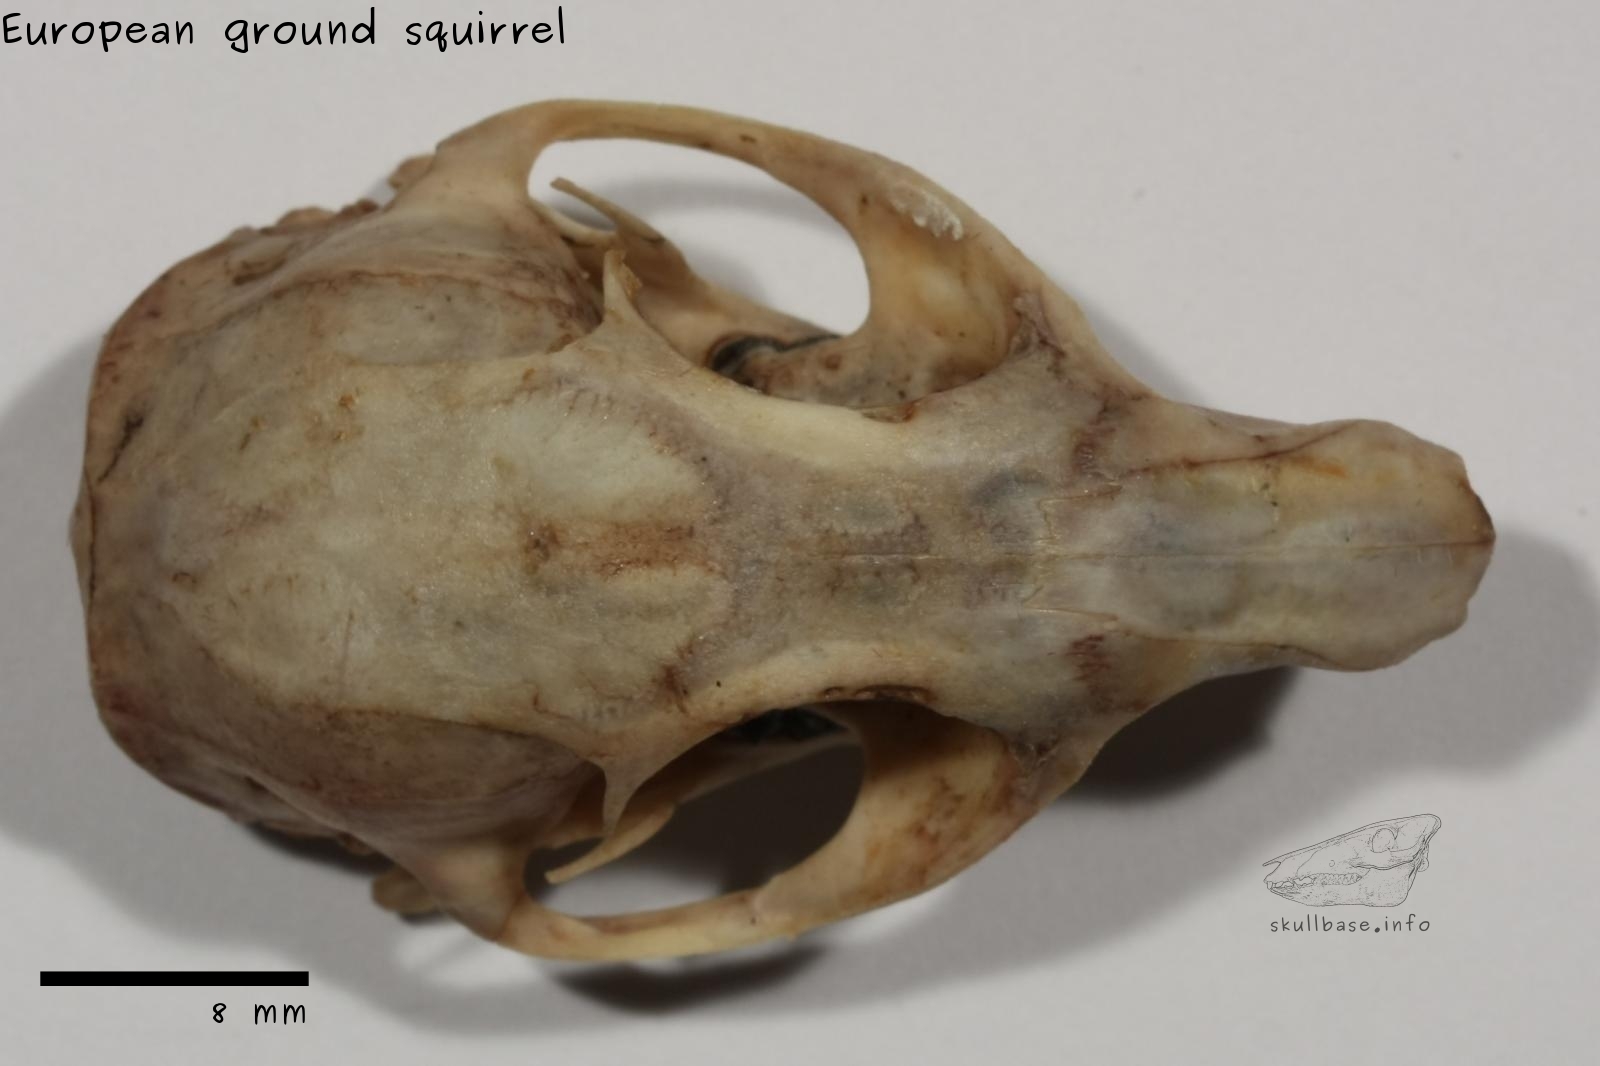 European ground squirrel (Spermophilus citellus) skull dorsal view